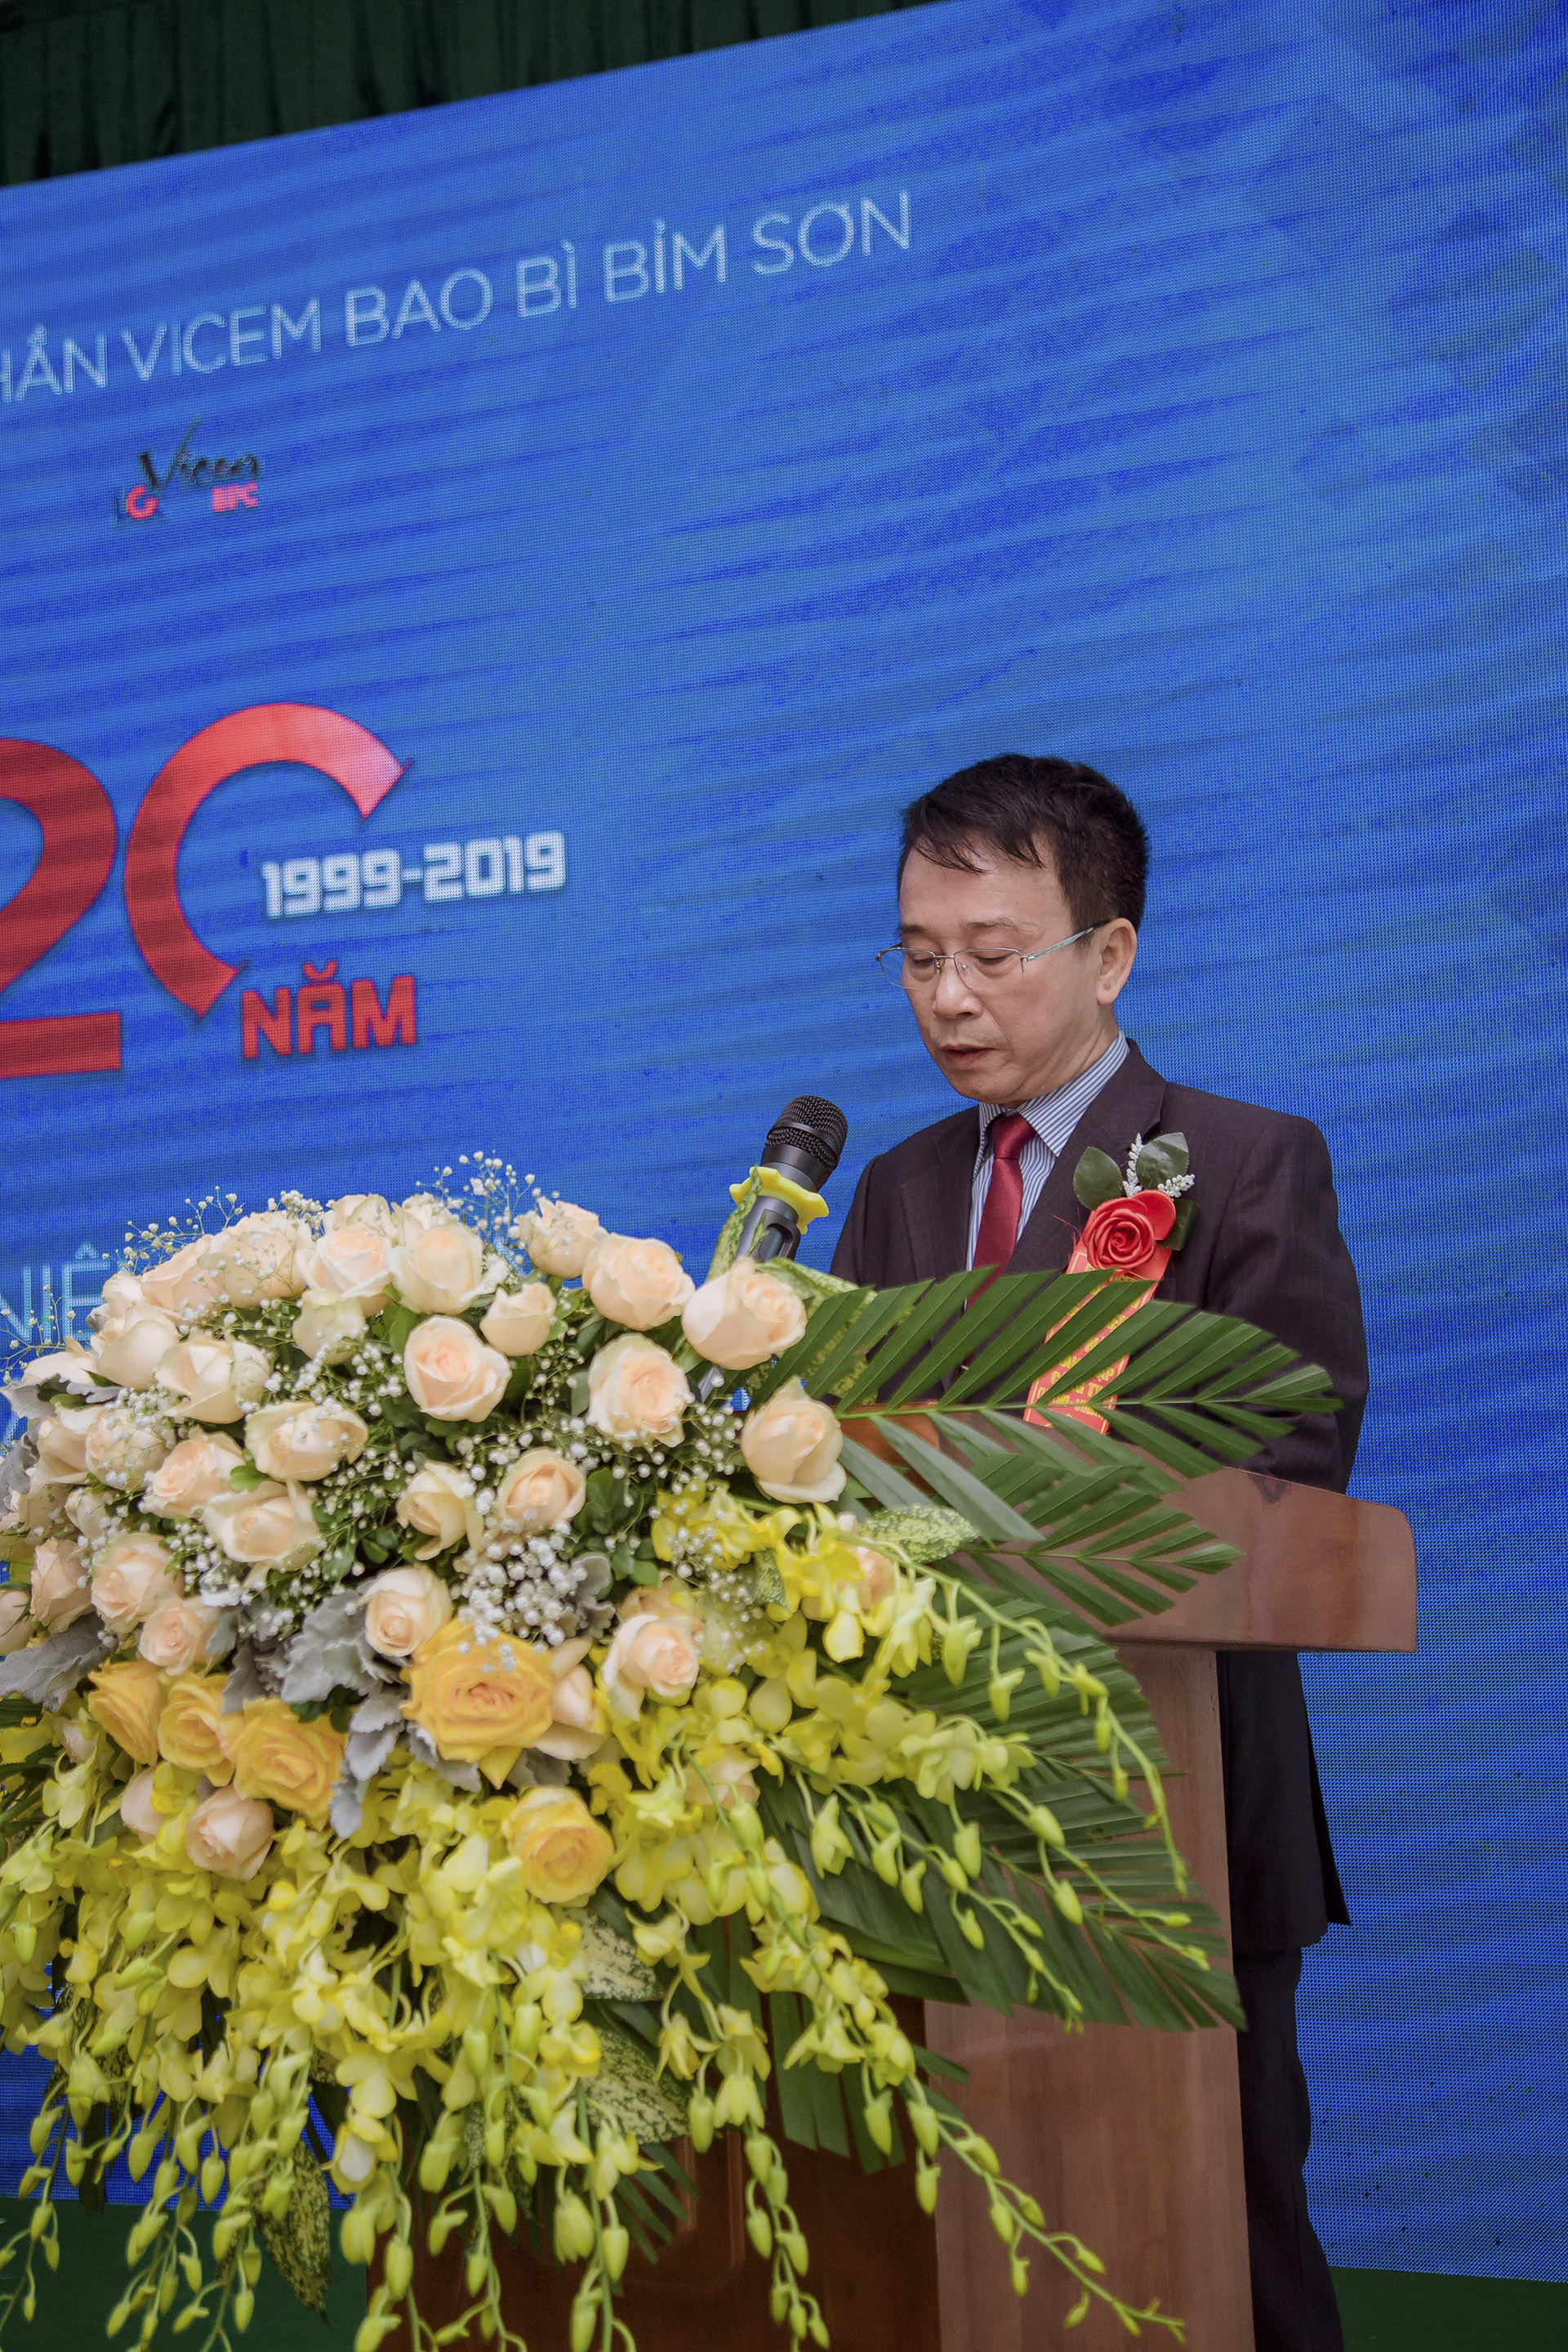 Kỷ niệm 20 năm thành lập Công ty CP Vicem Bao bì Bỉm Sơn